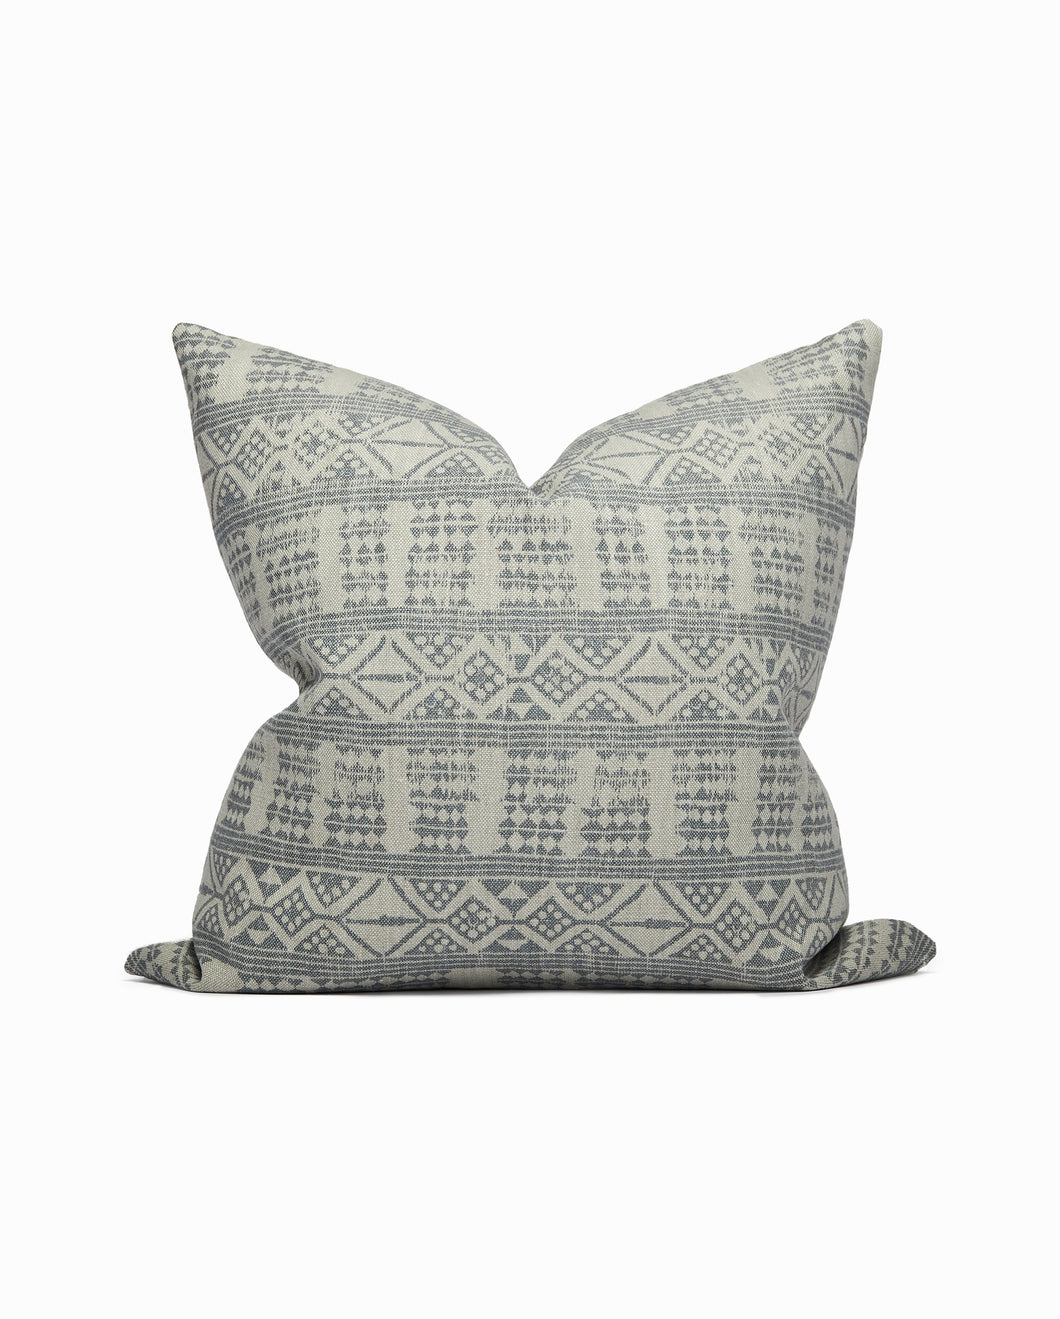 Peter Dunham Textiles Addis in Ash/Gray Tribal print pillow. Throw pillow. Pillow cover. Linen pillow cover. Handmade pillow. Throw pillow.  Peter Dunham pillow. Elsie Home.